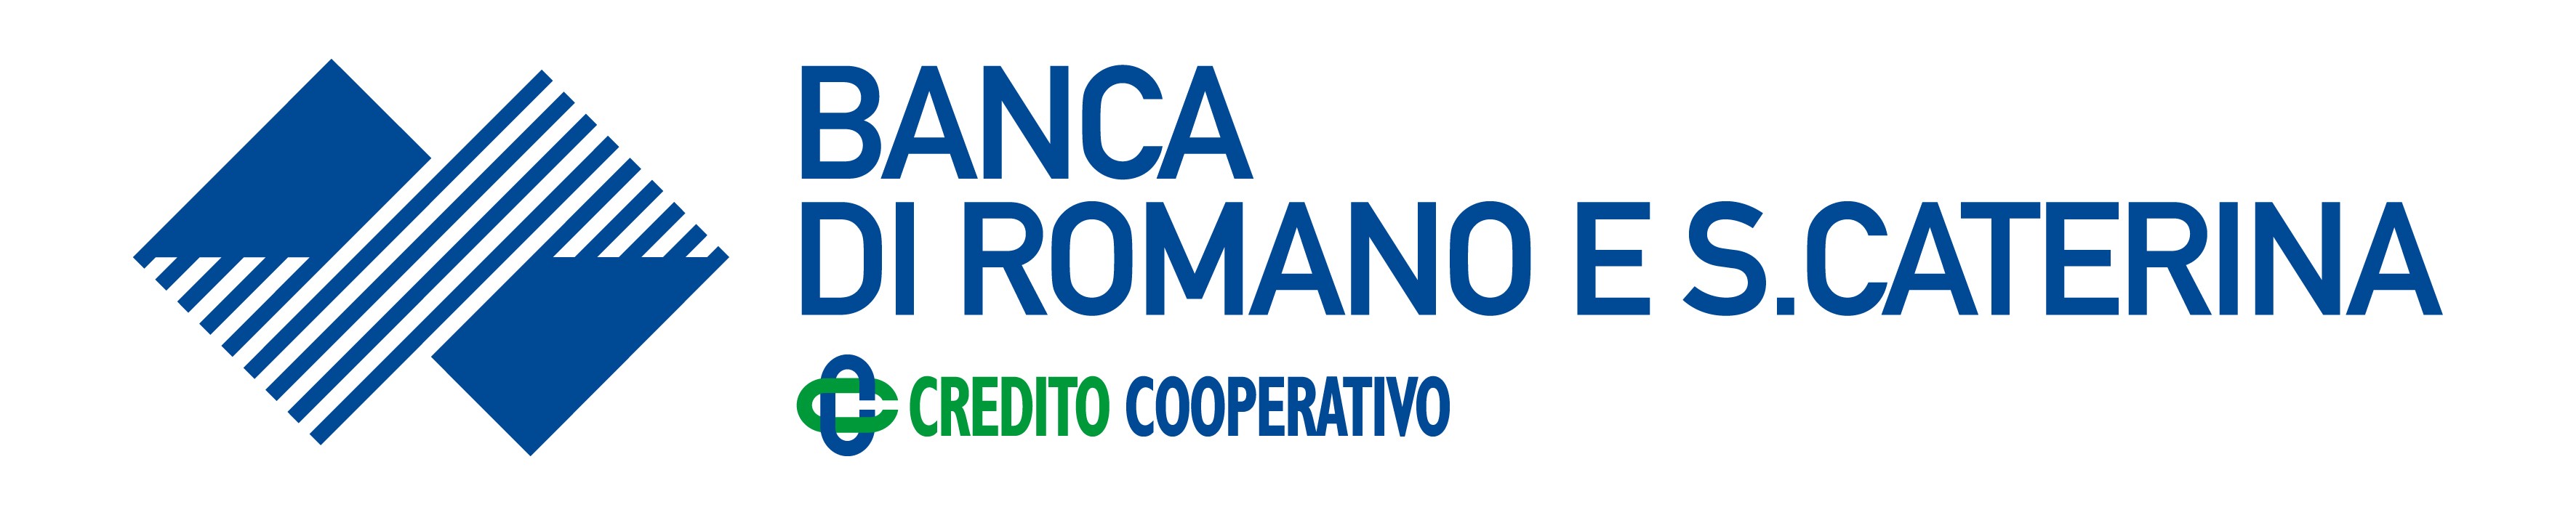 BANCA DI ROMANO E S.CATERINA CREDITO COOPERATIVO (VI) sOCIETA’ COOPERATIVA